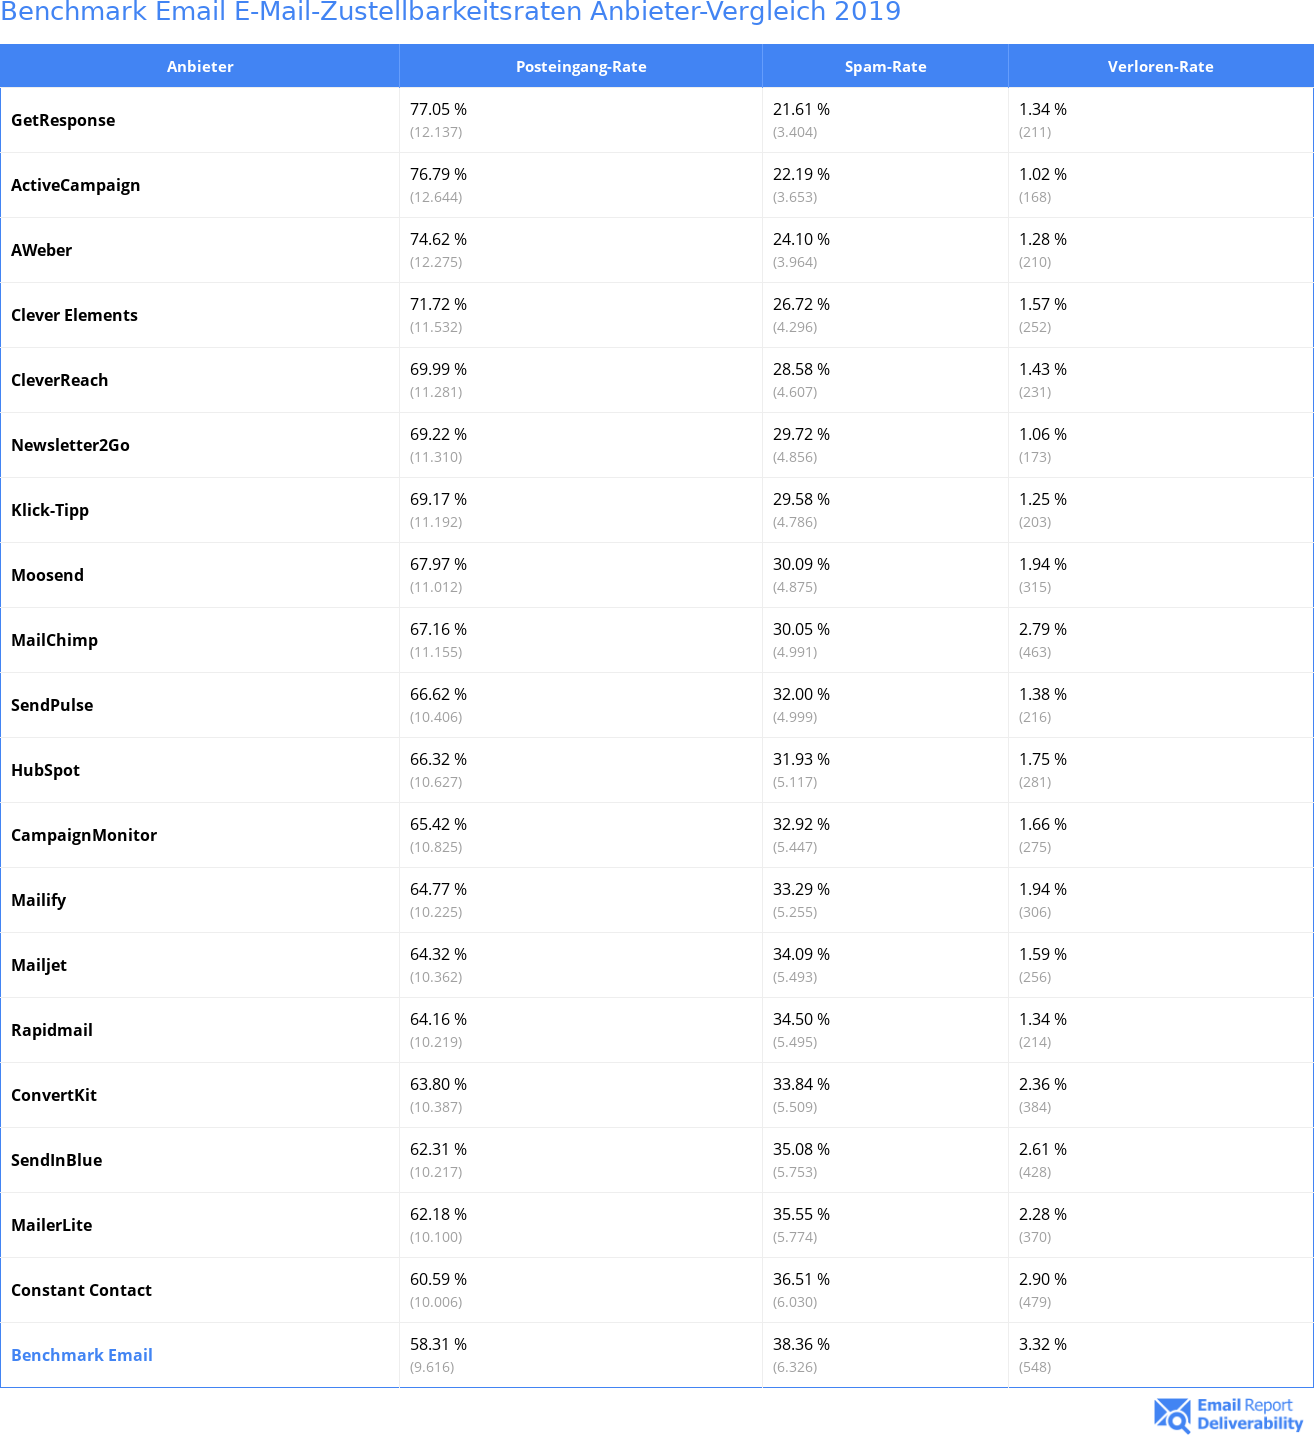 Benchmark Email E-Mail-Zustellbarkeitsraten Anbieter-Vergleich 2019